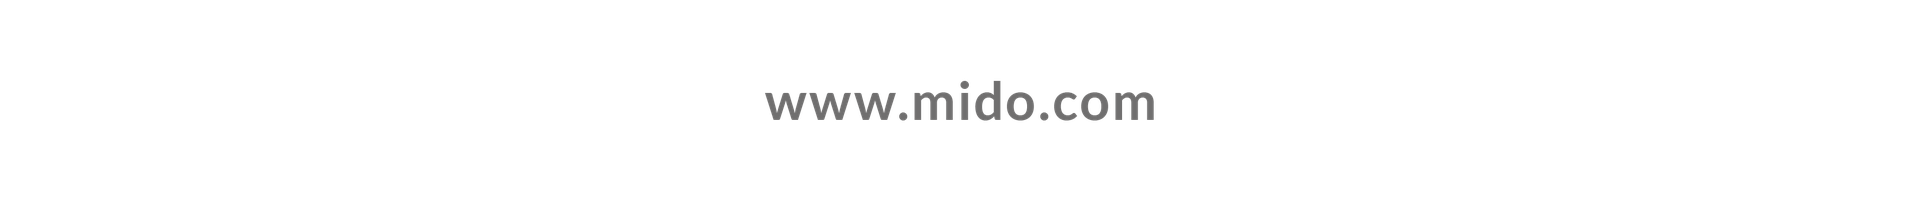 www.mido.com